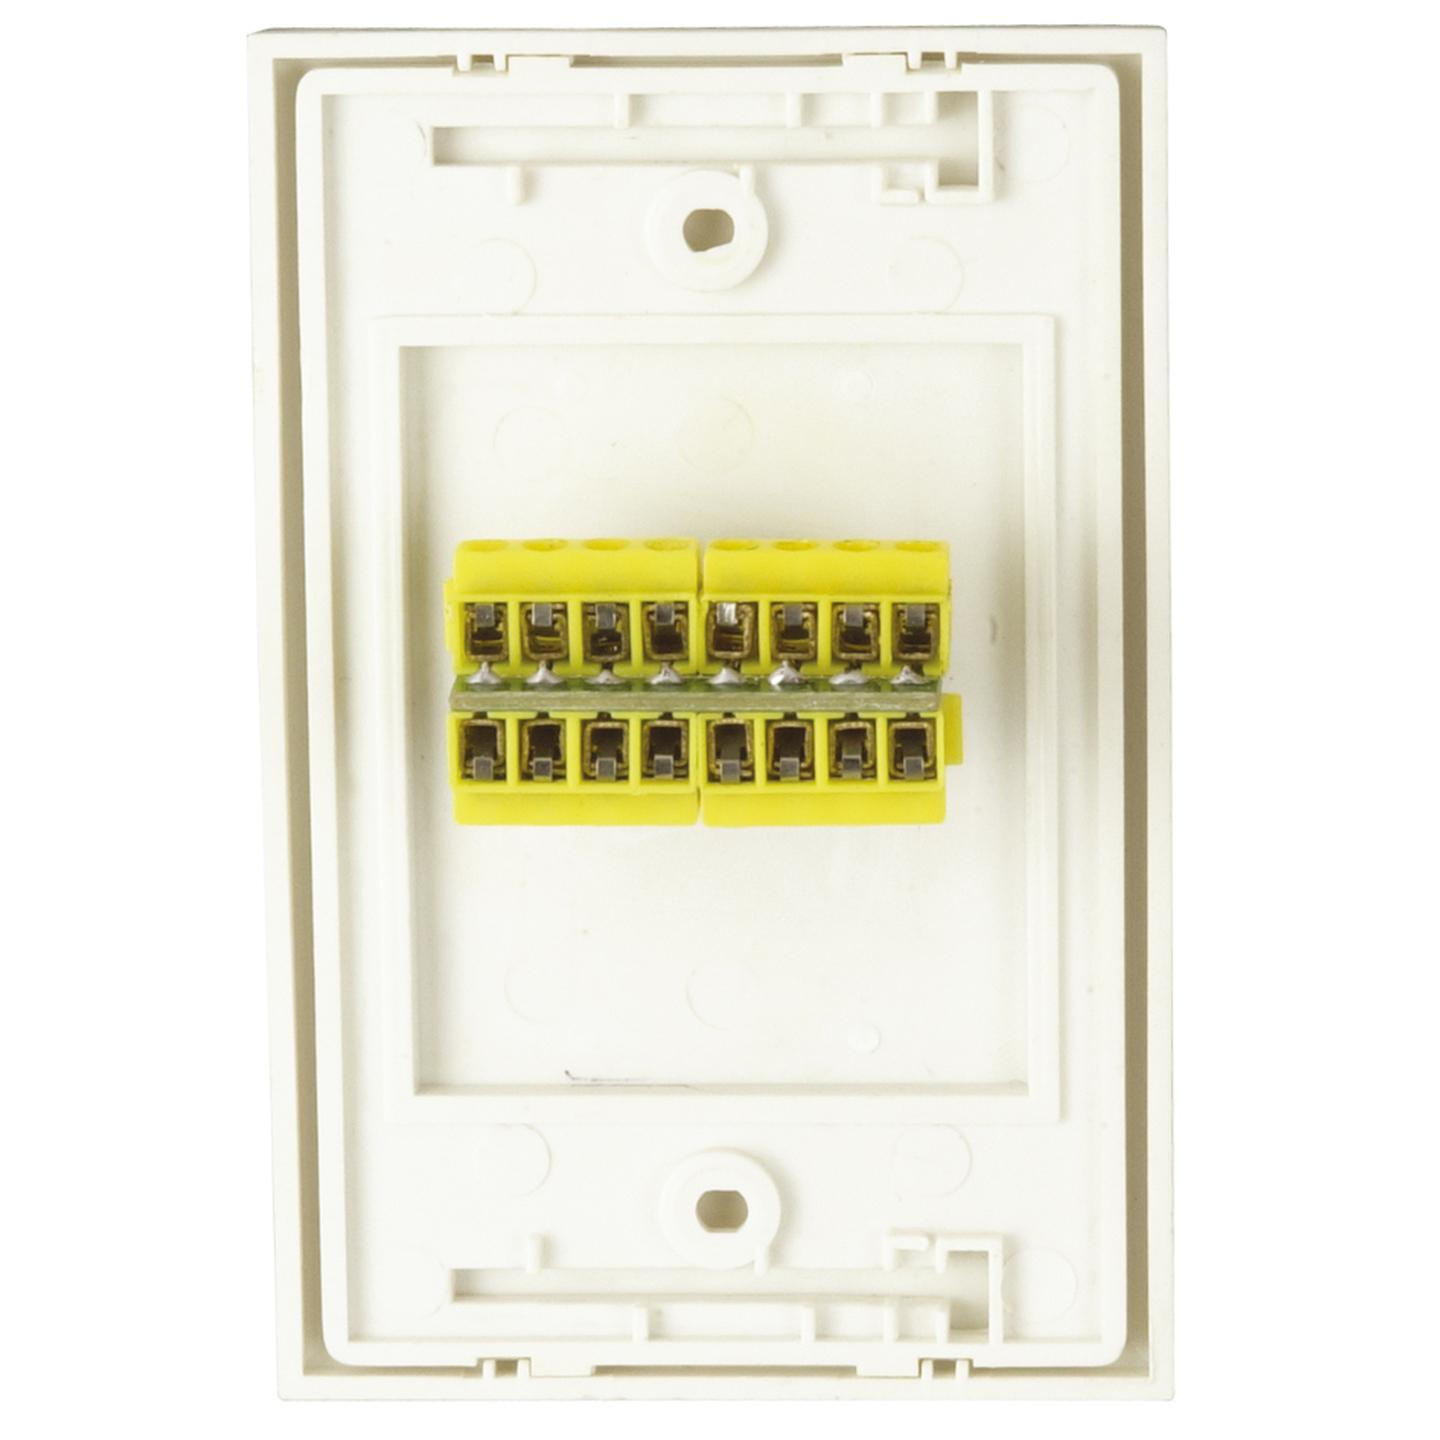 15 Pin VGA Socket Wall Plate